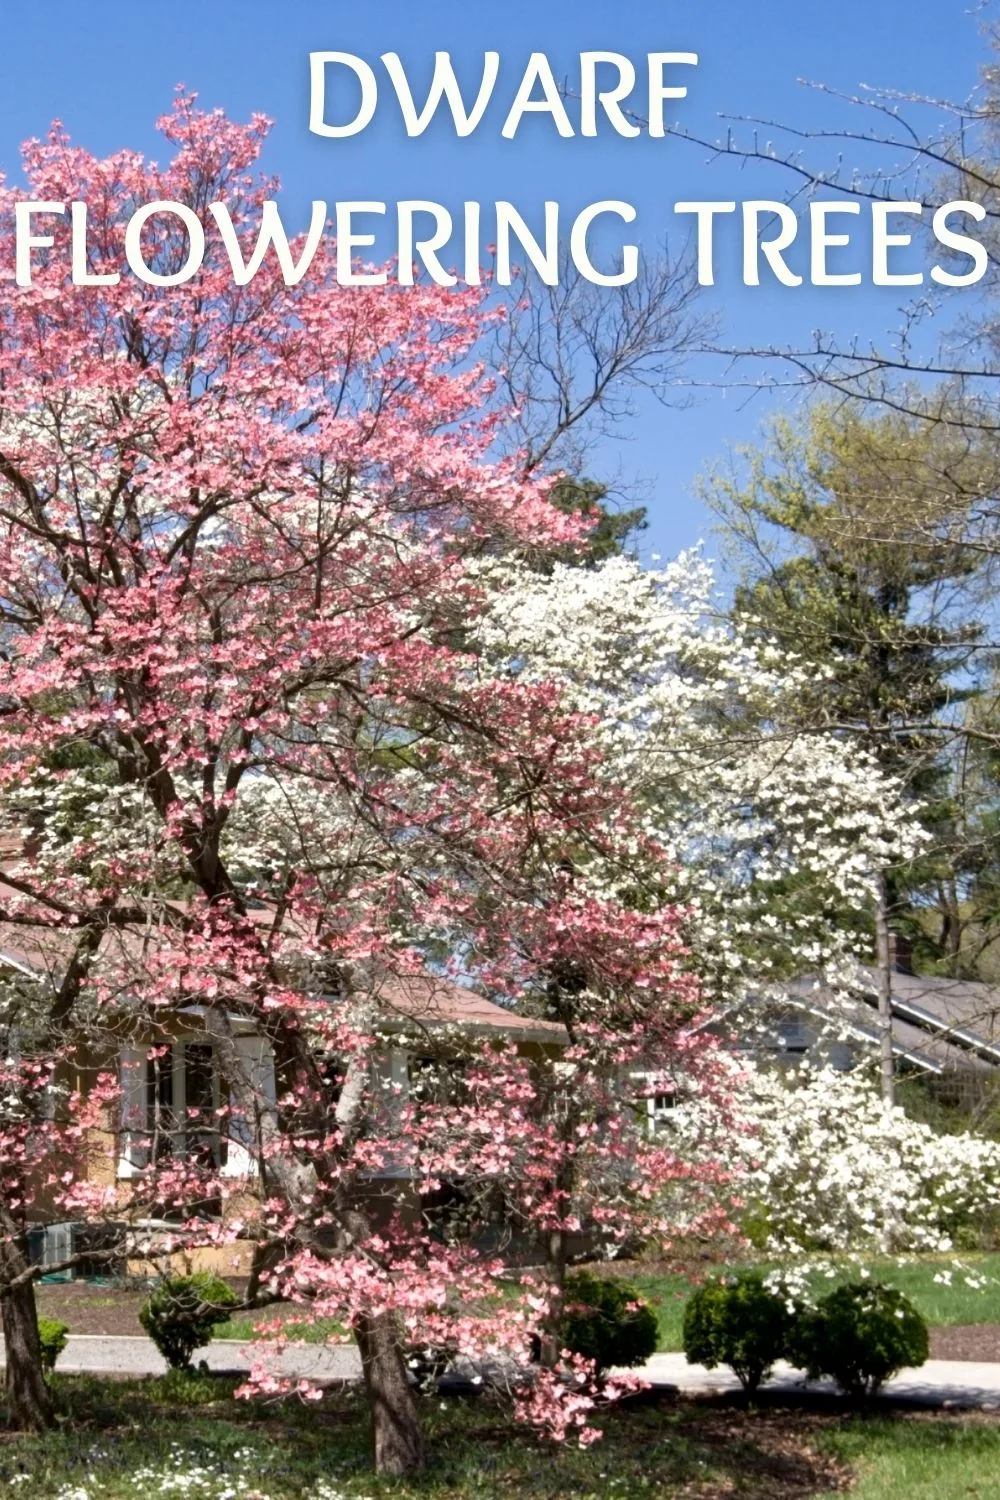 dwarf flowering trees